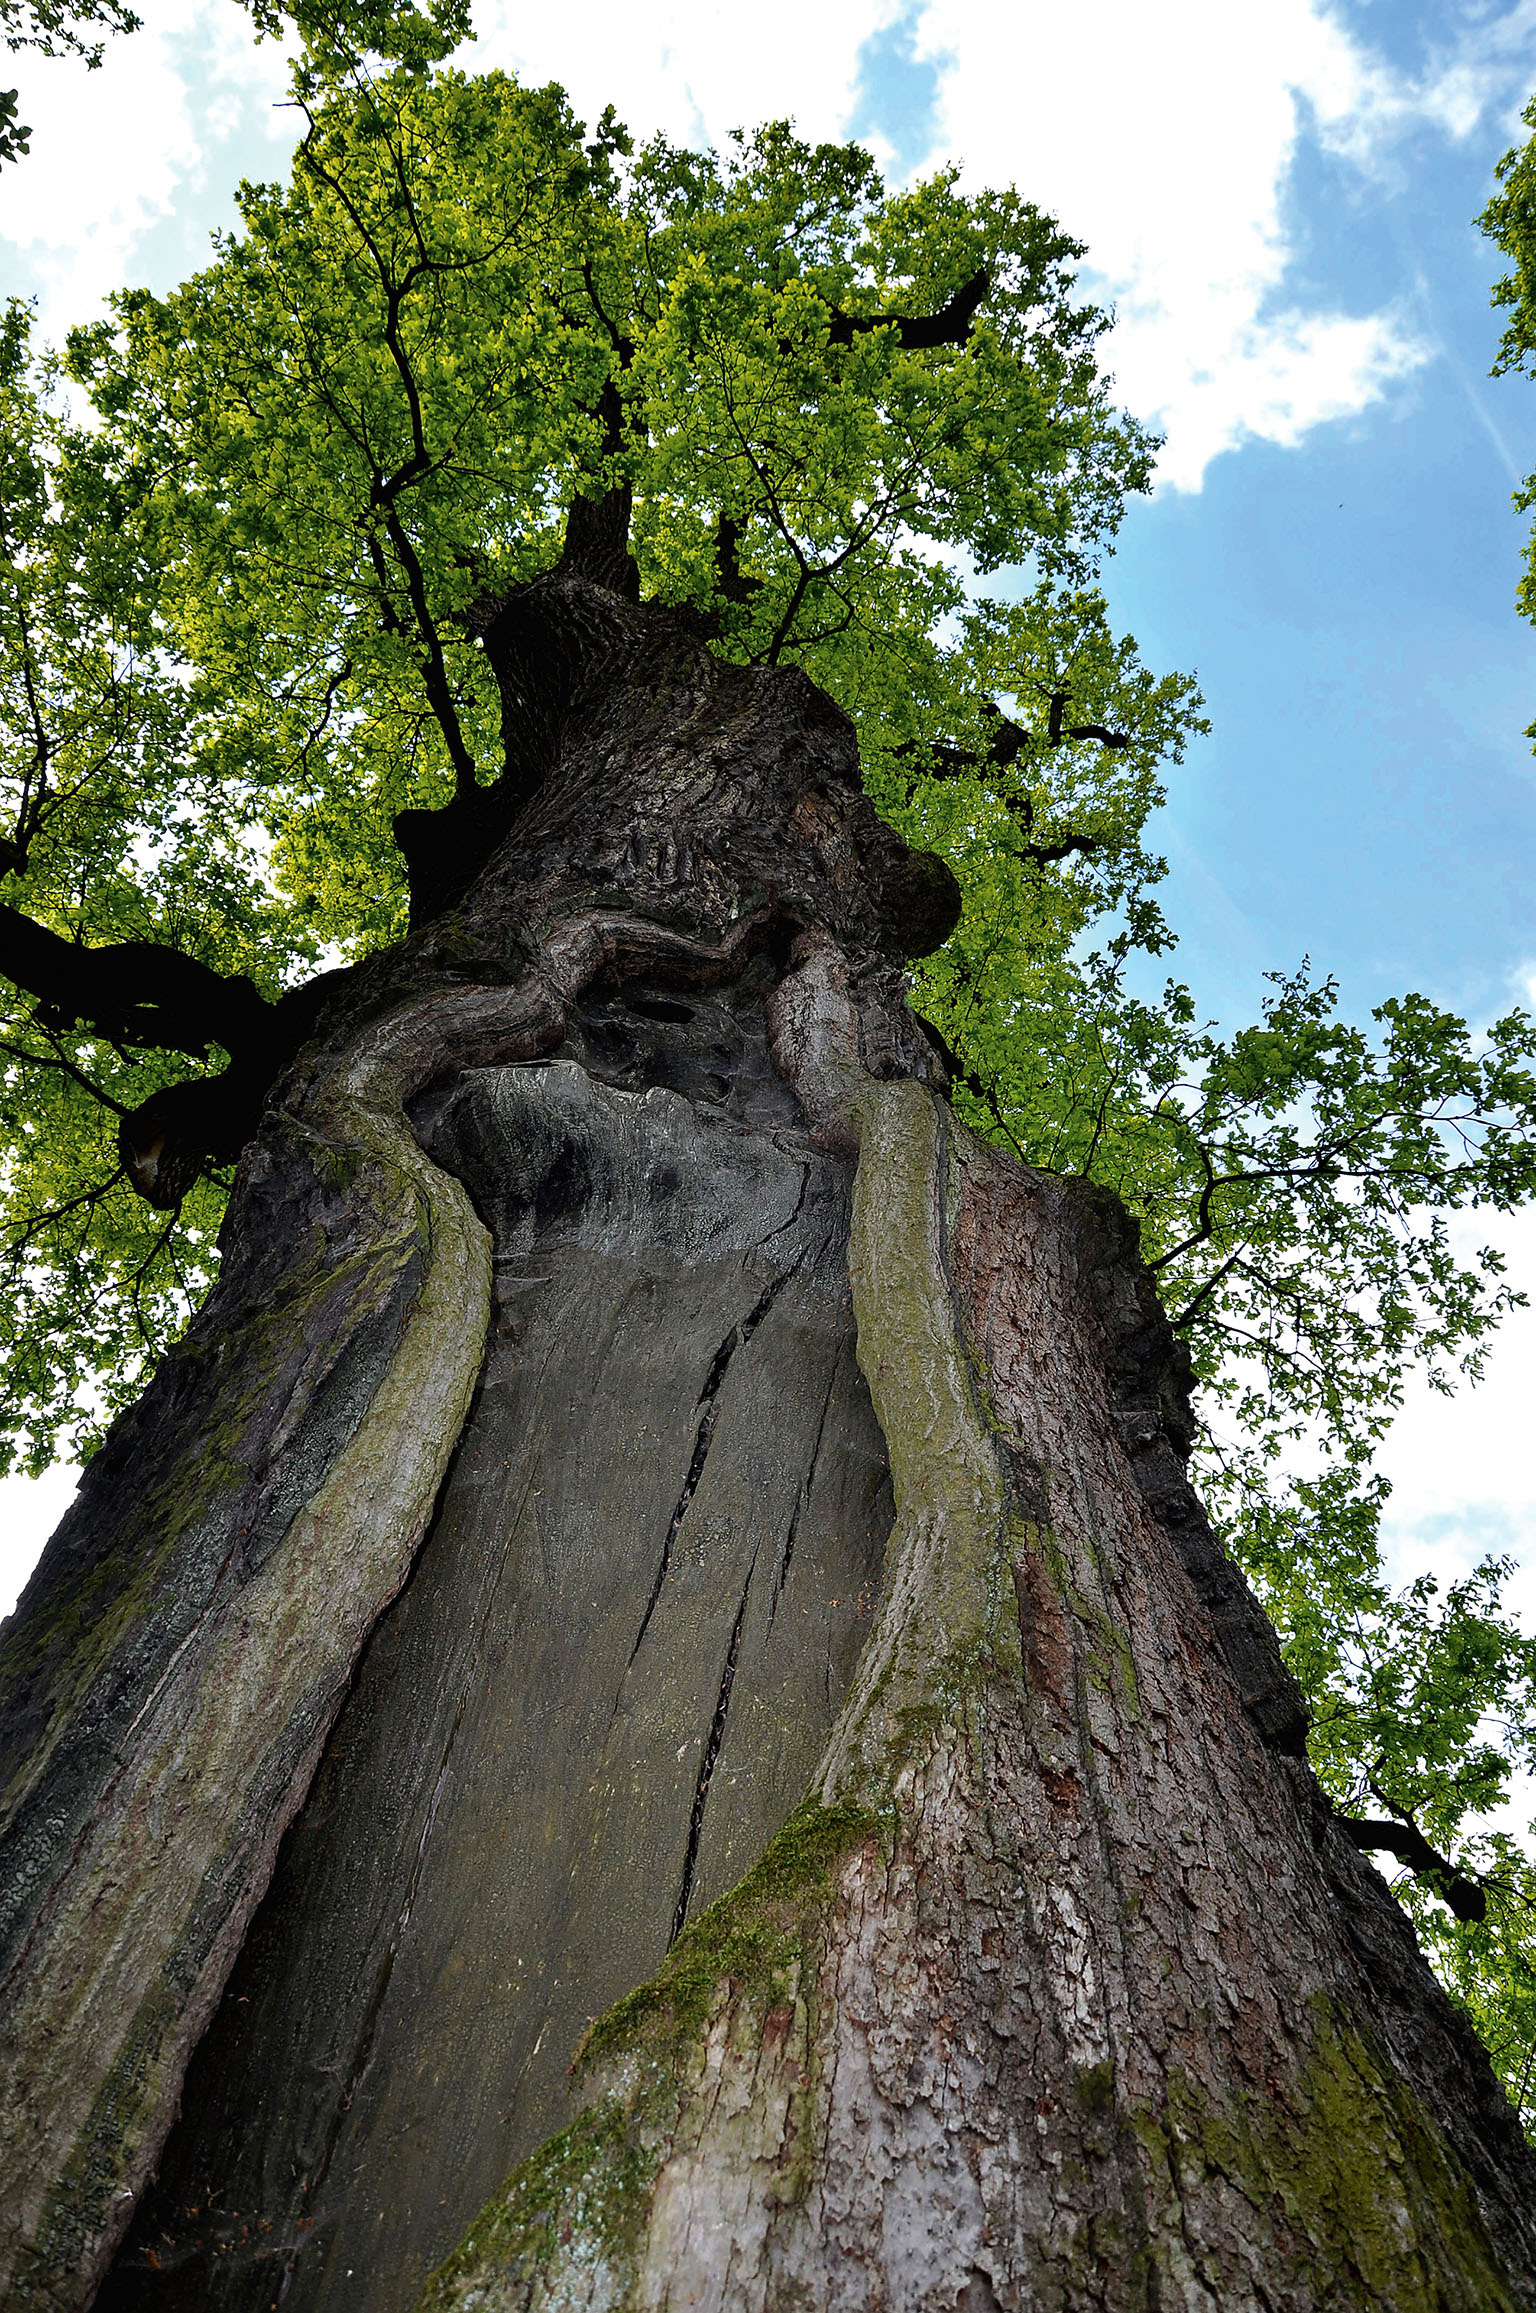 Vykotlaný strom, v němž se za války víc než dva měsíce ukrývala židovská rodina, byl vloni vyhlášen Evropským stromem roku.